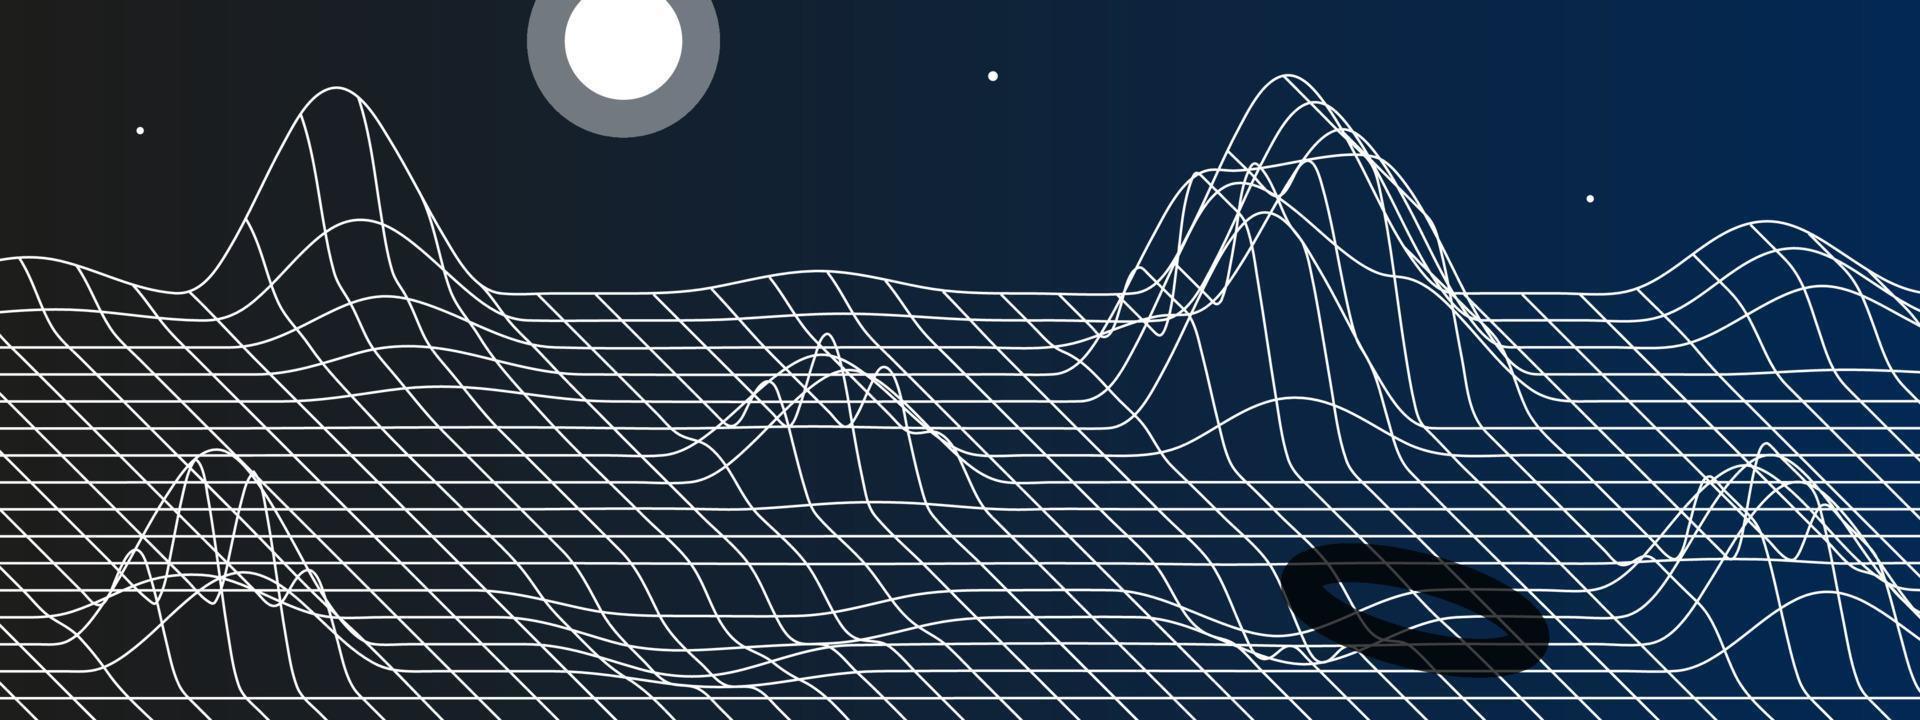 digital espacio paisaje con montañas, Luna y estrellas. vector ilustración de lineal malla y resumen forma. perspectiva cuadrícula con convexo distorsiones en el formar de montañas. noche antecedentes.